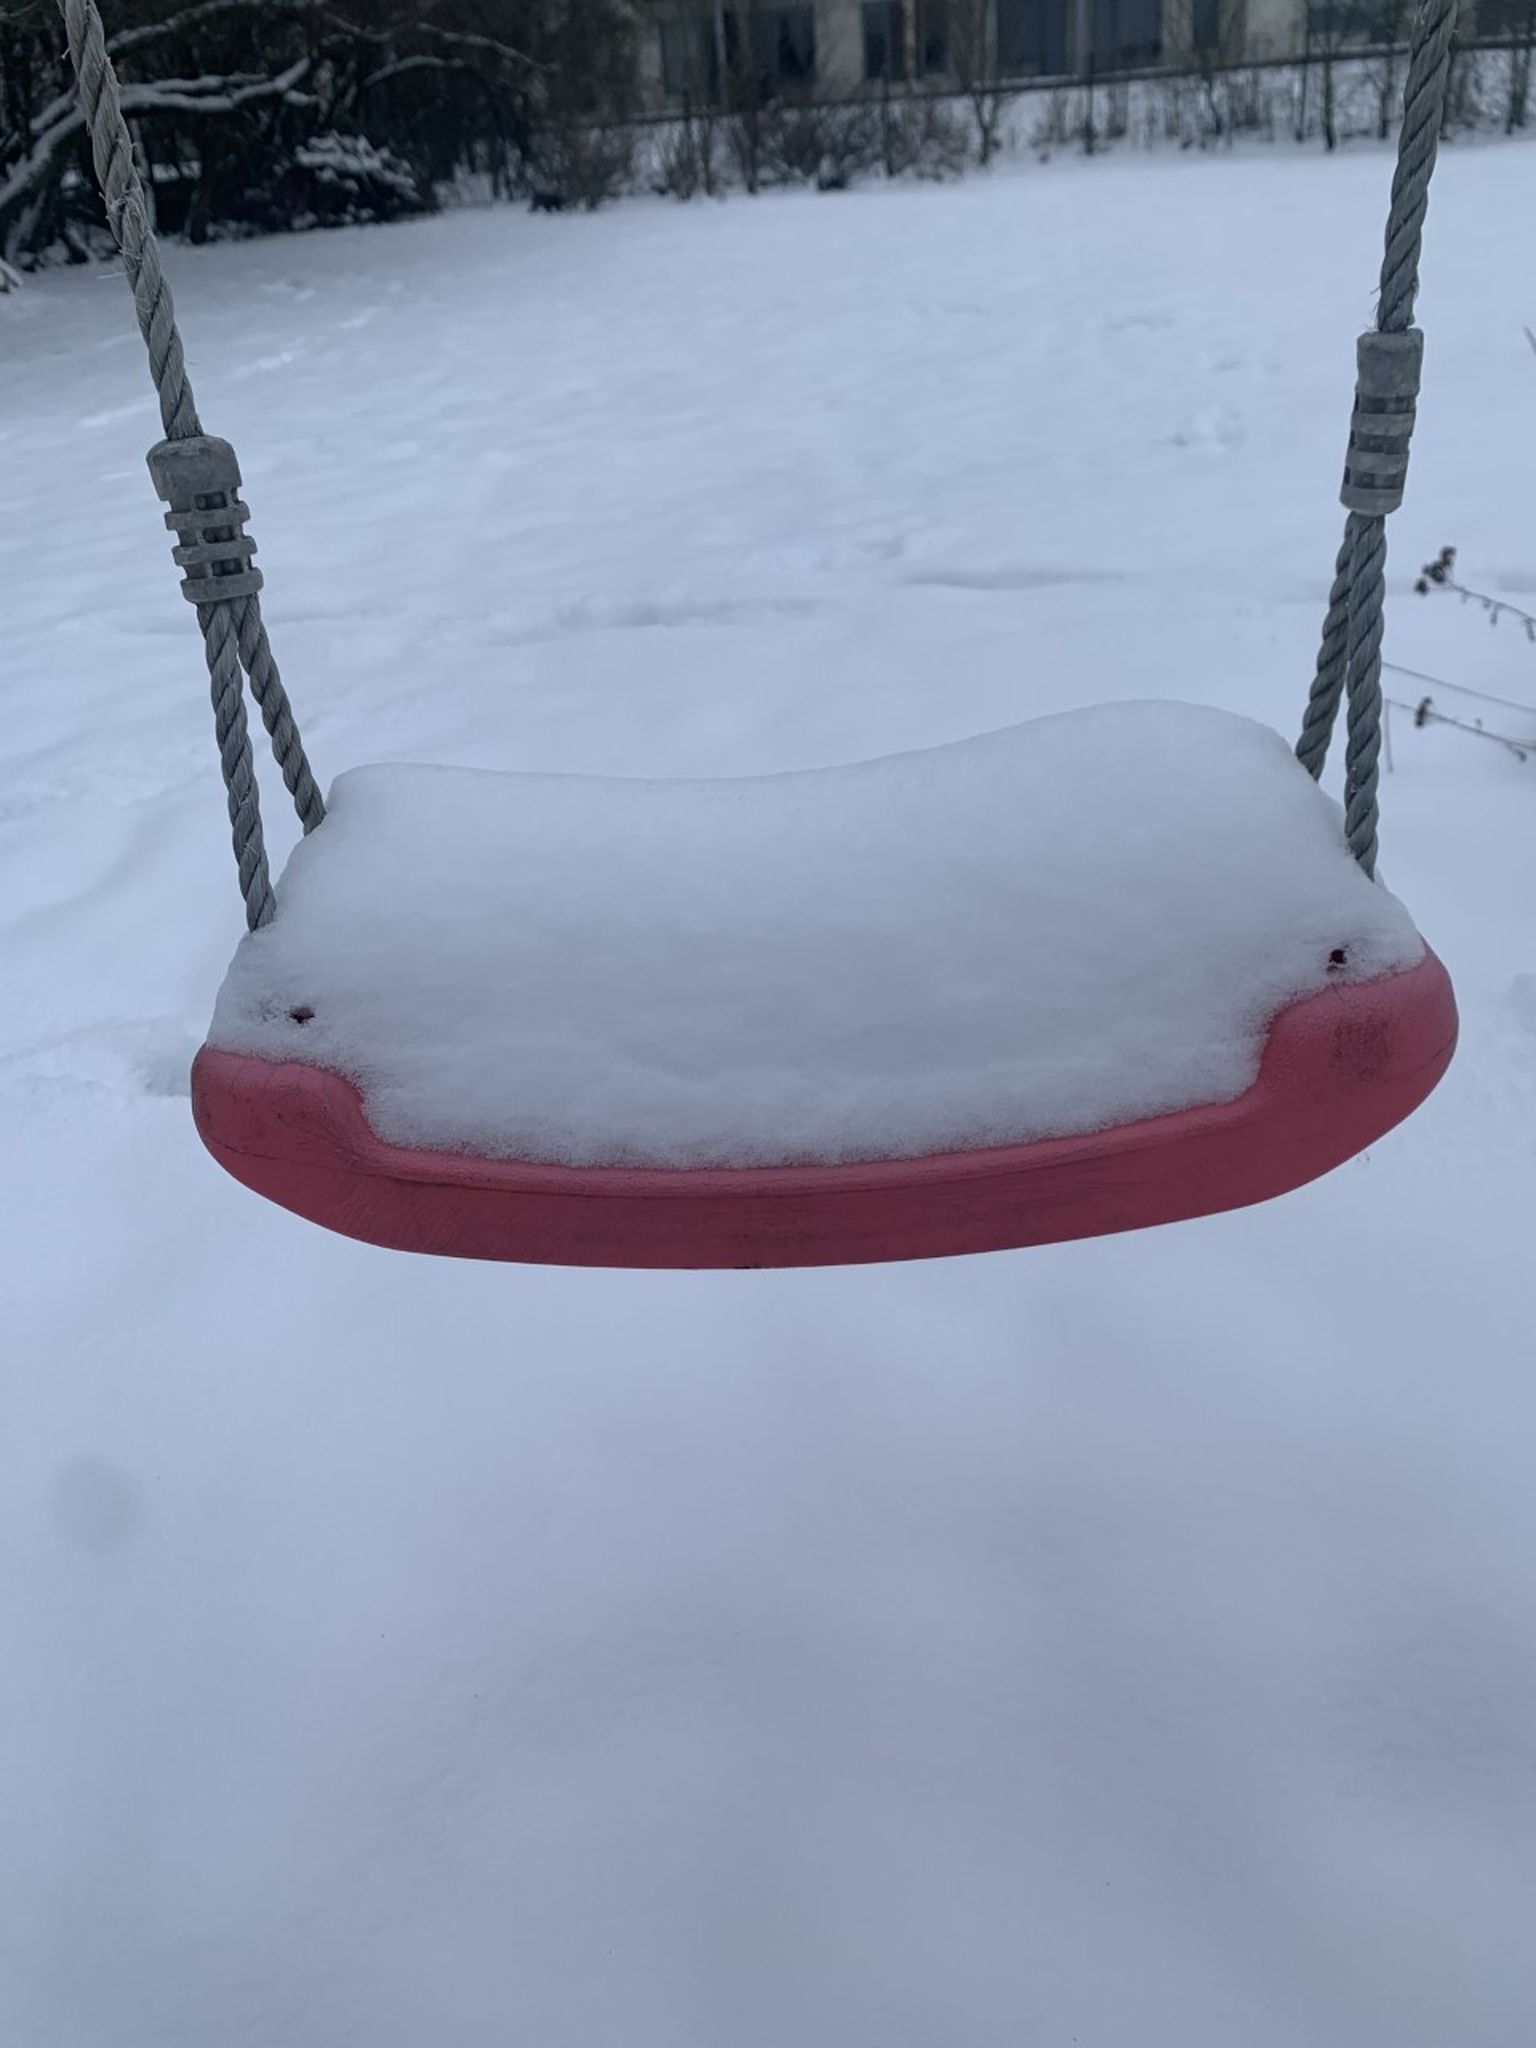 "Lumemõõdik" kiigel näitas lume paksuseks 15 cm.